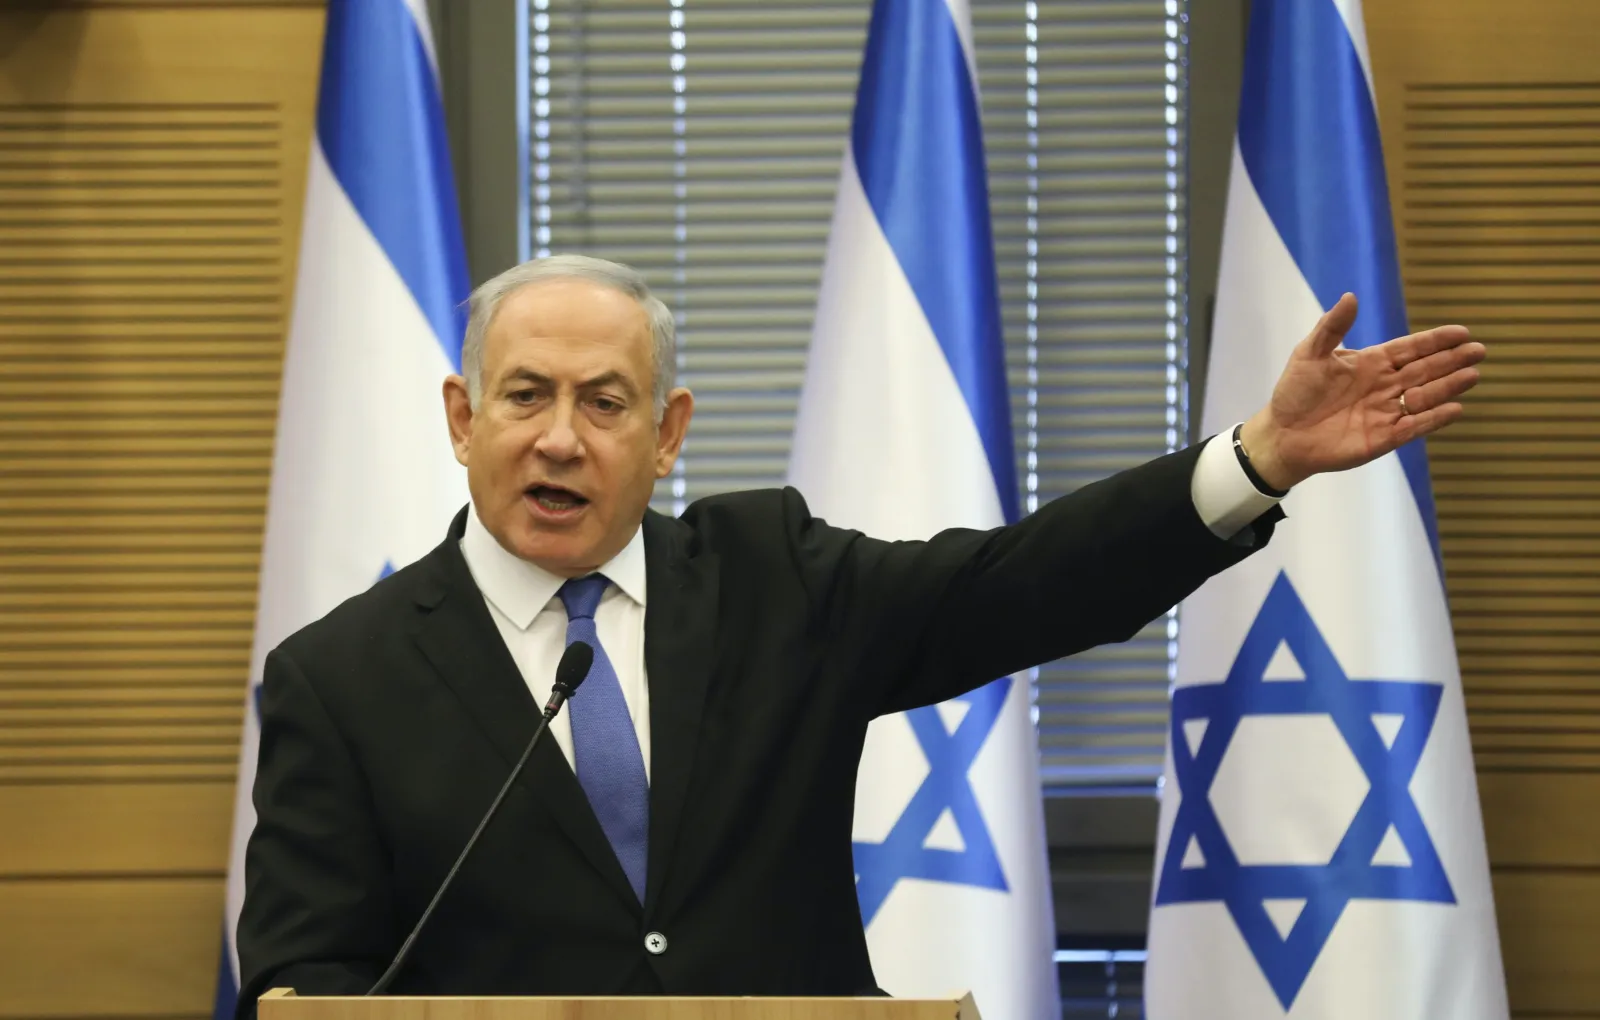 Биньямин Нетаньяху: «В отношениях с Путиным мы нашли компромисс»